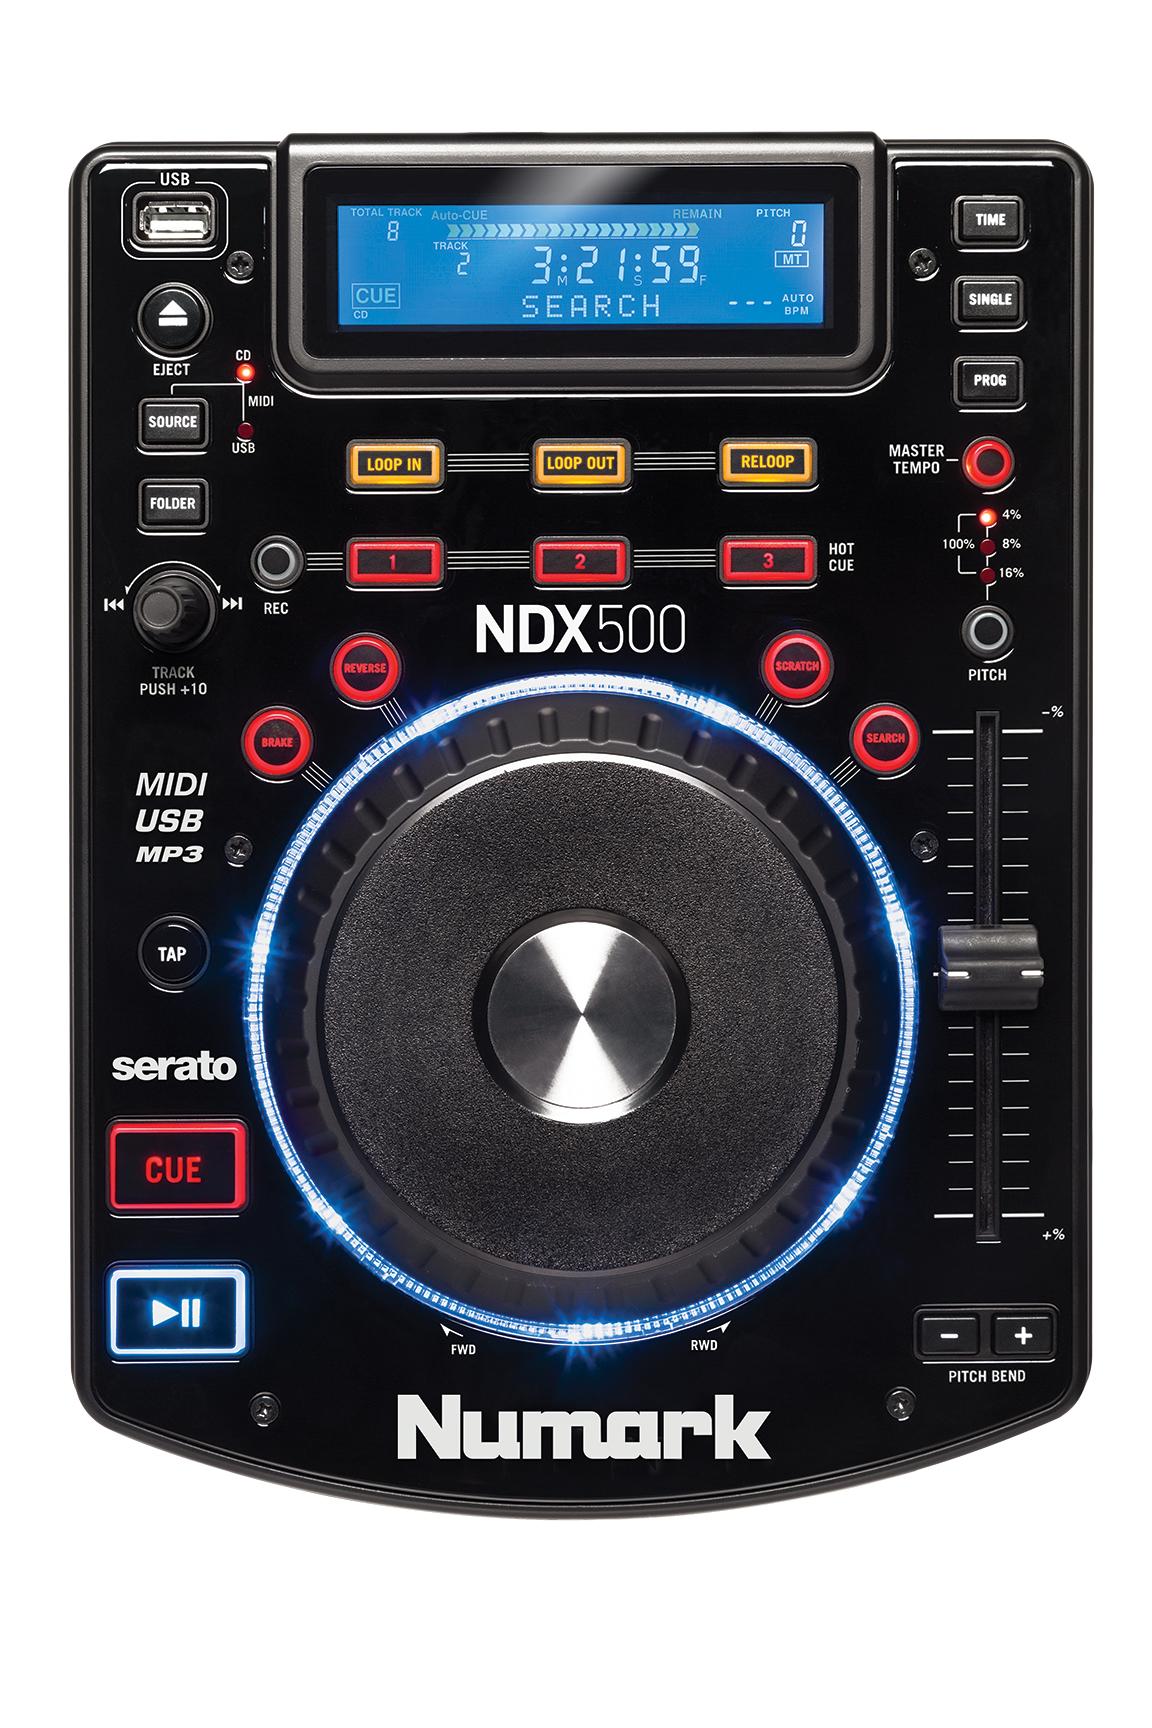 Numark NDX500 top